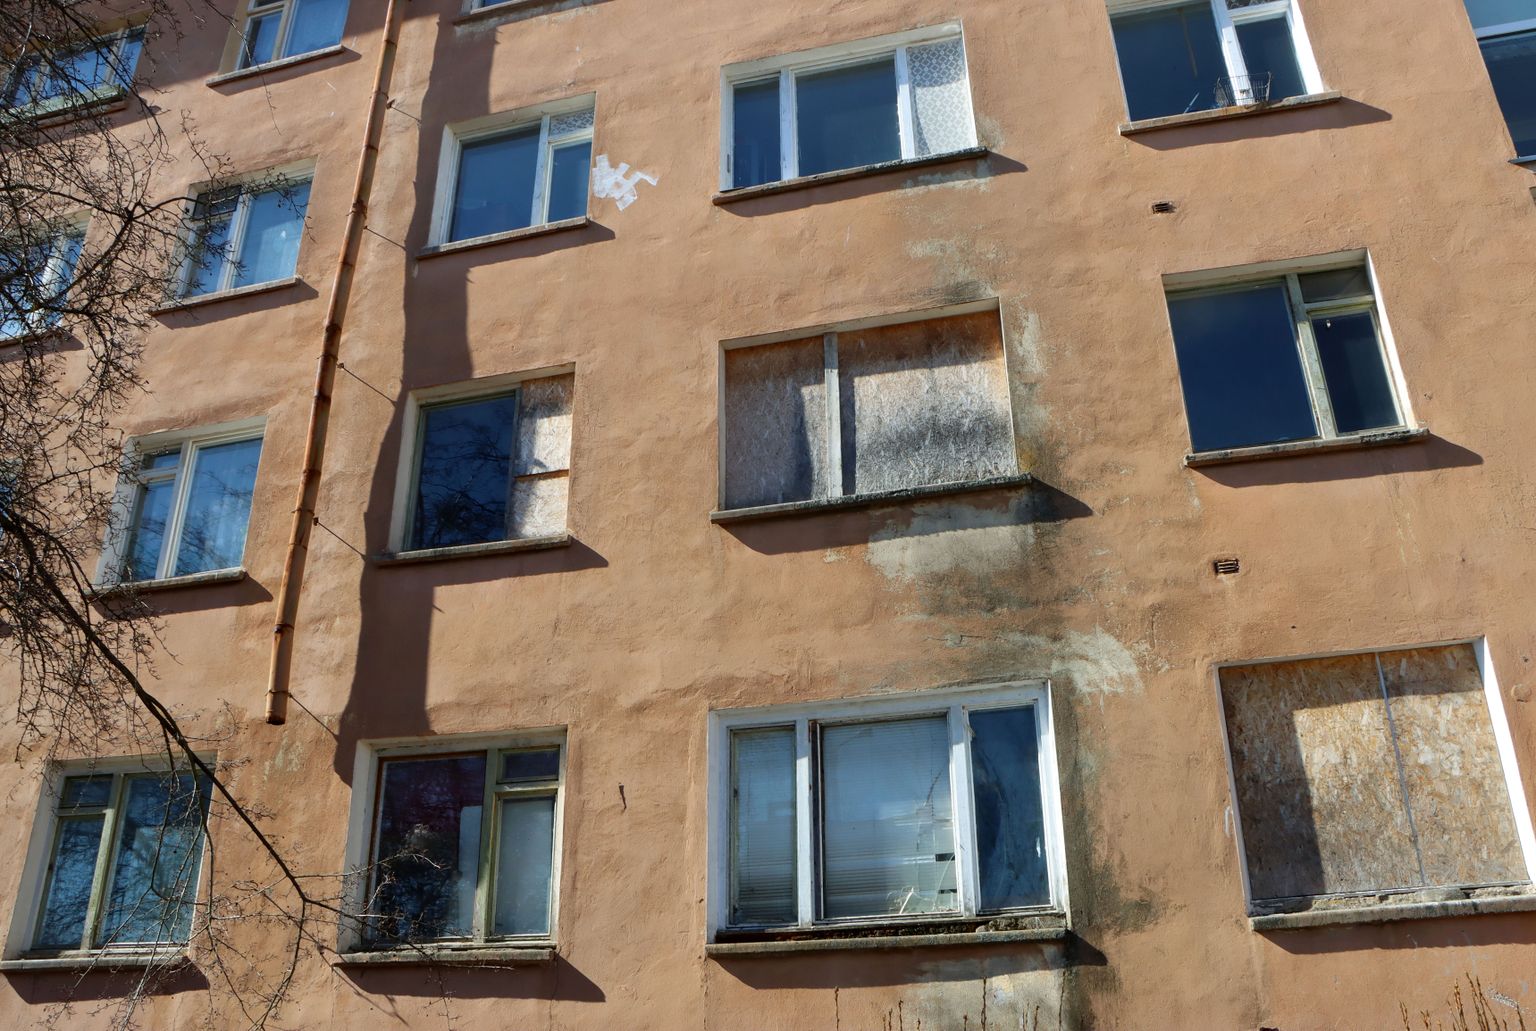 See Kohtla-Järvel Olevi tänaval asuva kortermaja foto on tehtud tänavu kevadel ning sellelt on näha, et osal tühjalt seisvatel korteritel on aknaklaasidki purustatud, rääkimata korterite endi armetust seisust.